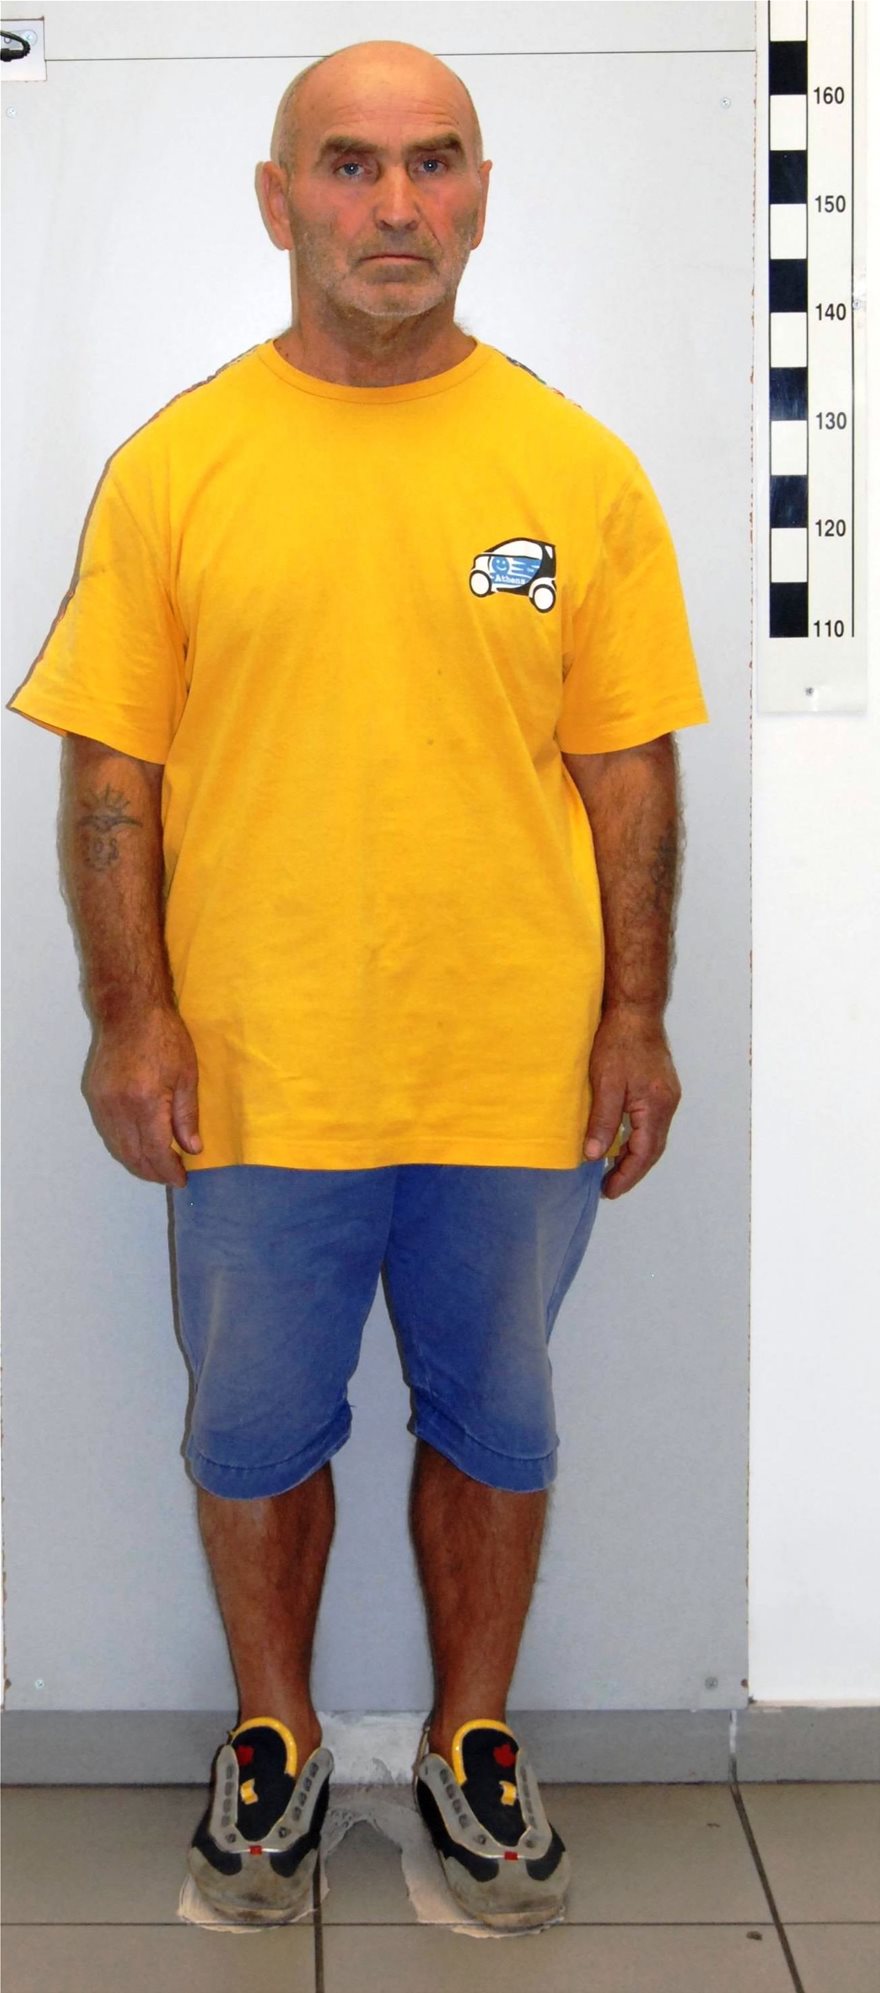 Αυτός είναι ο 63χρονος που κατηγορείται για ασέλγεια σε βάρος ανηλίκων - Φωτογραφία 3